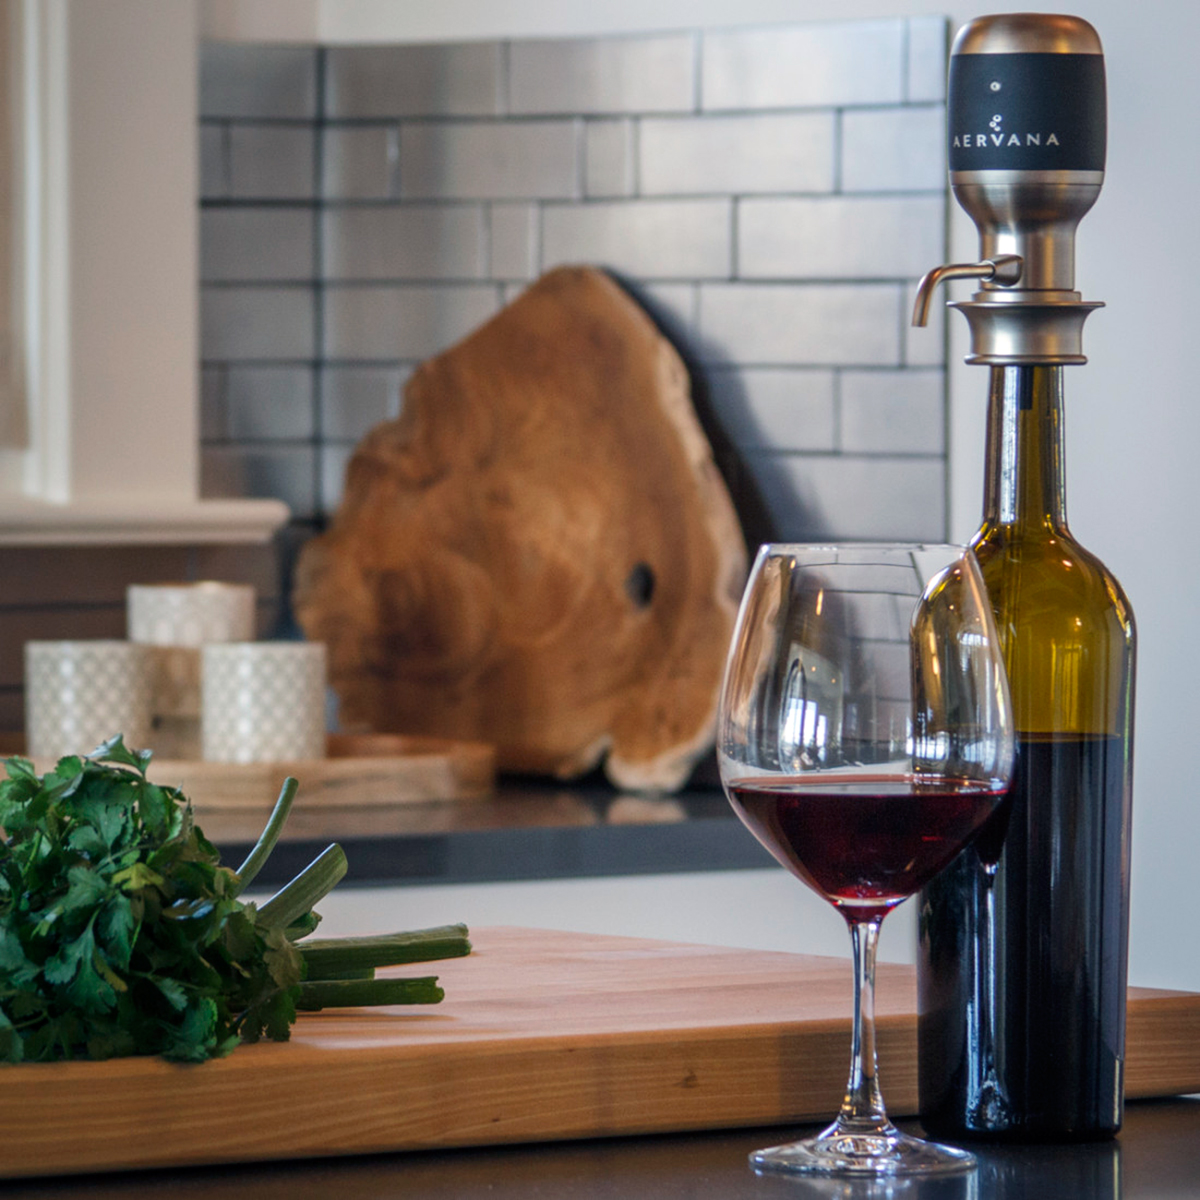 squarerooms-aervana-electric-wine-aerating-dispenser